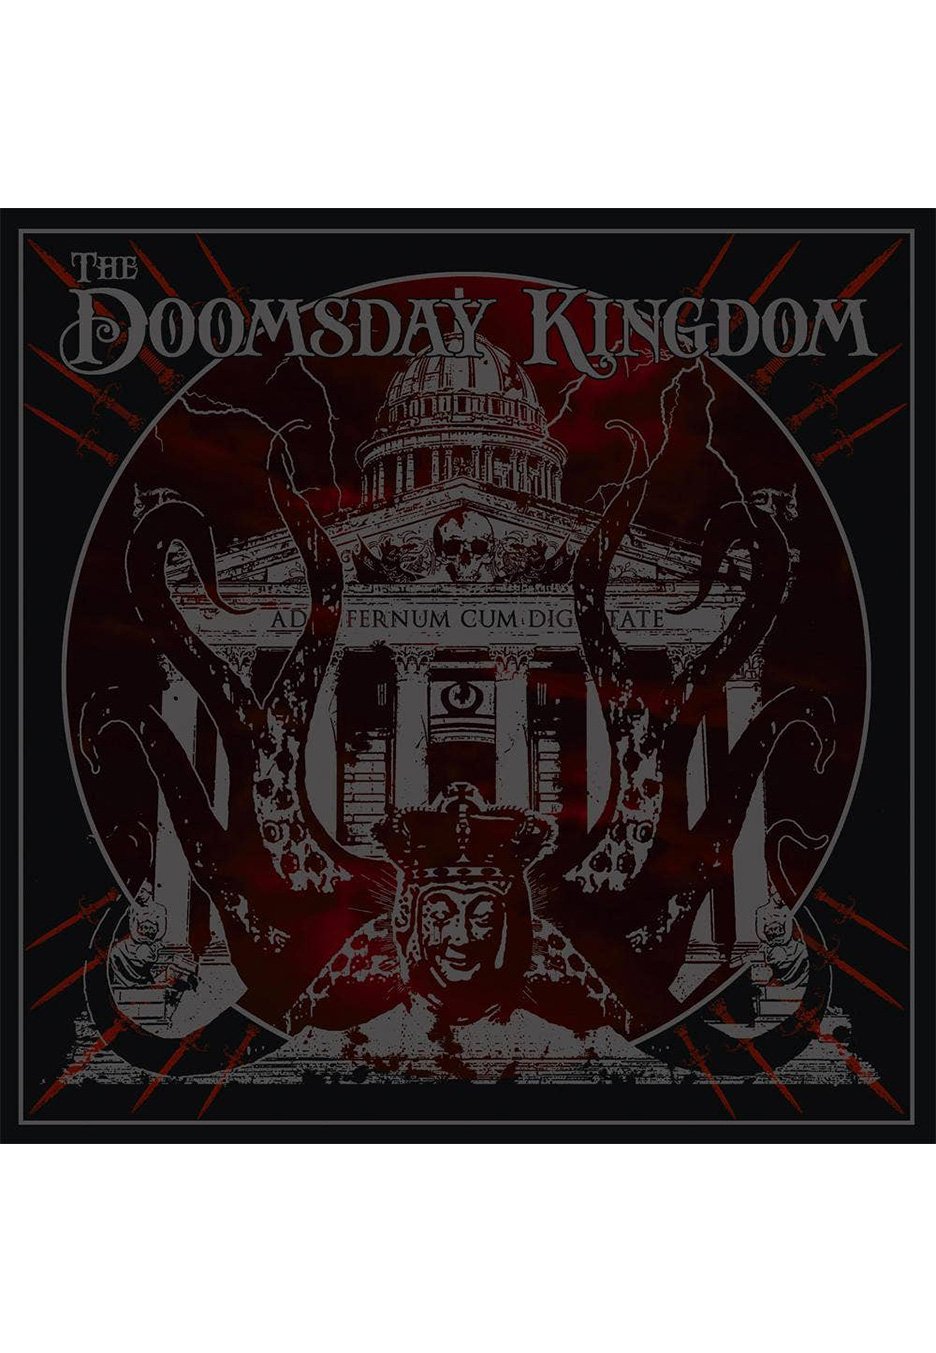 The Doomsday Kingdom - The Doomsday Kingdom - 2 Vinyl